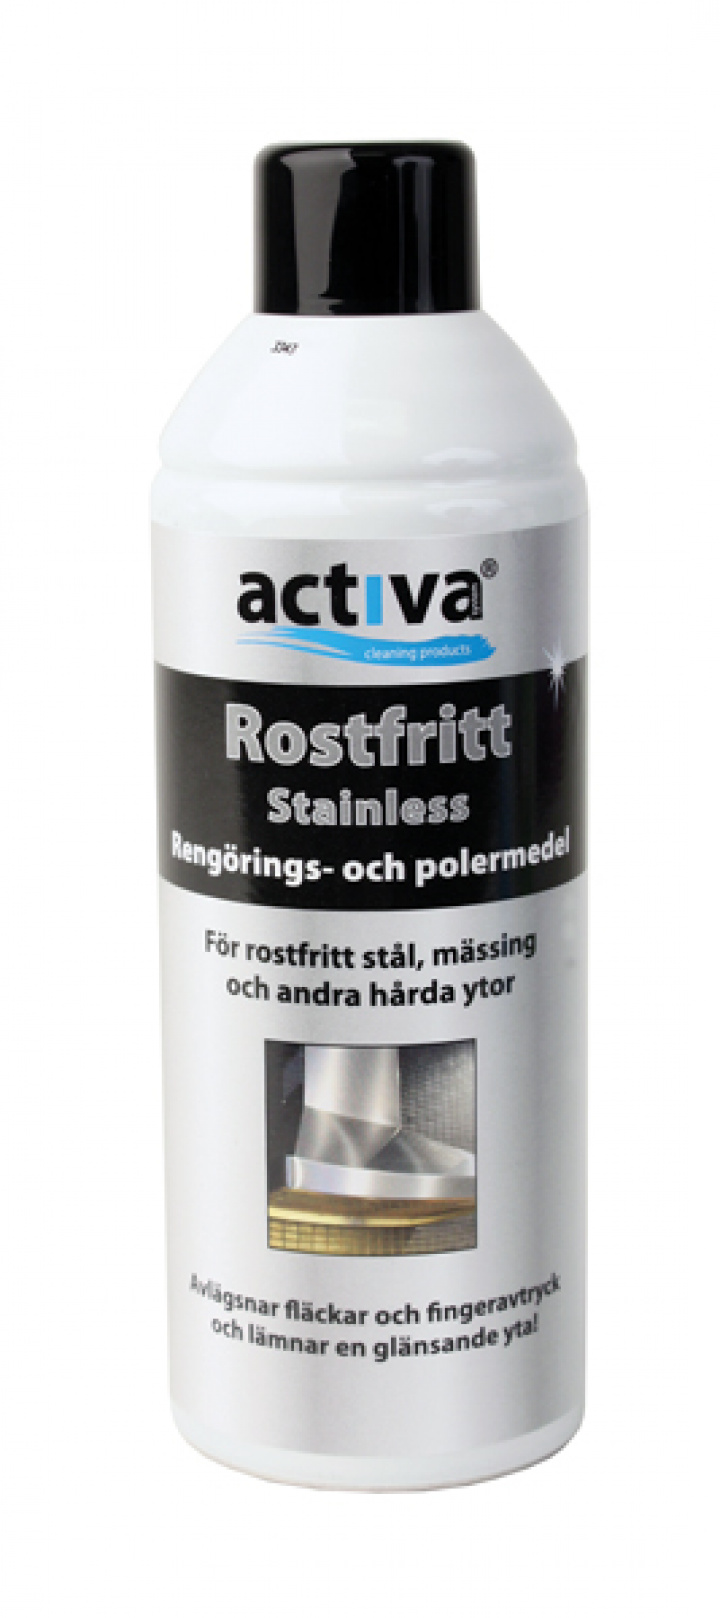 Activa Rostfritt Aerosol i gruppen Stdutrustning / Stdkem & Golvvrd / Textil, rostfritt & vriga kem hos Stdbutiken (41129)